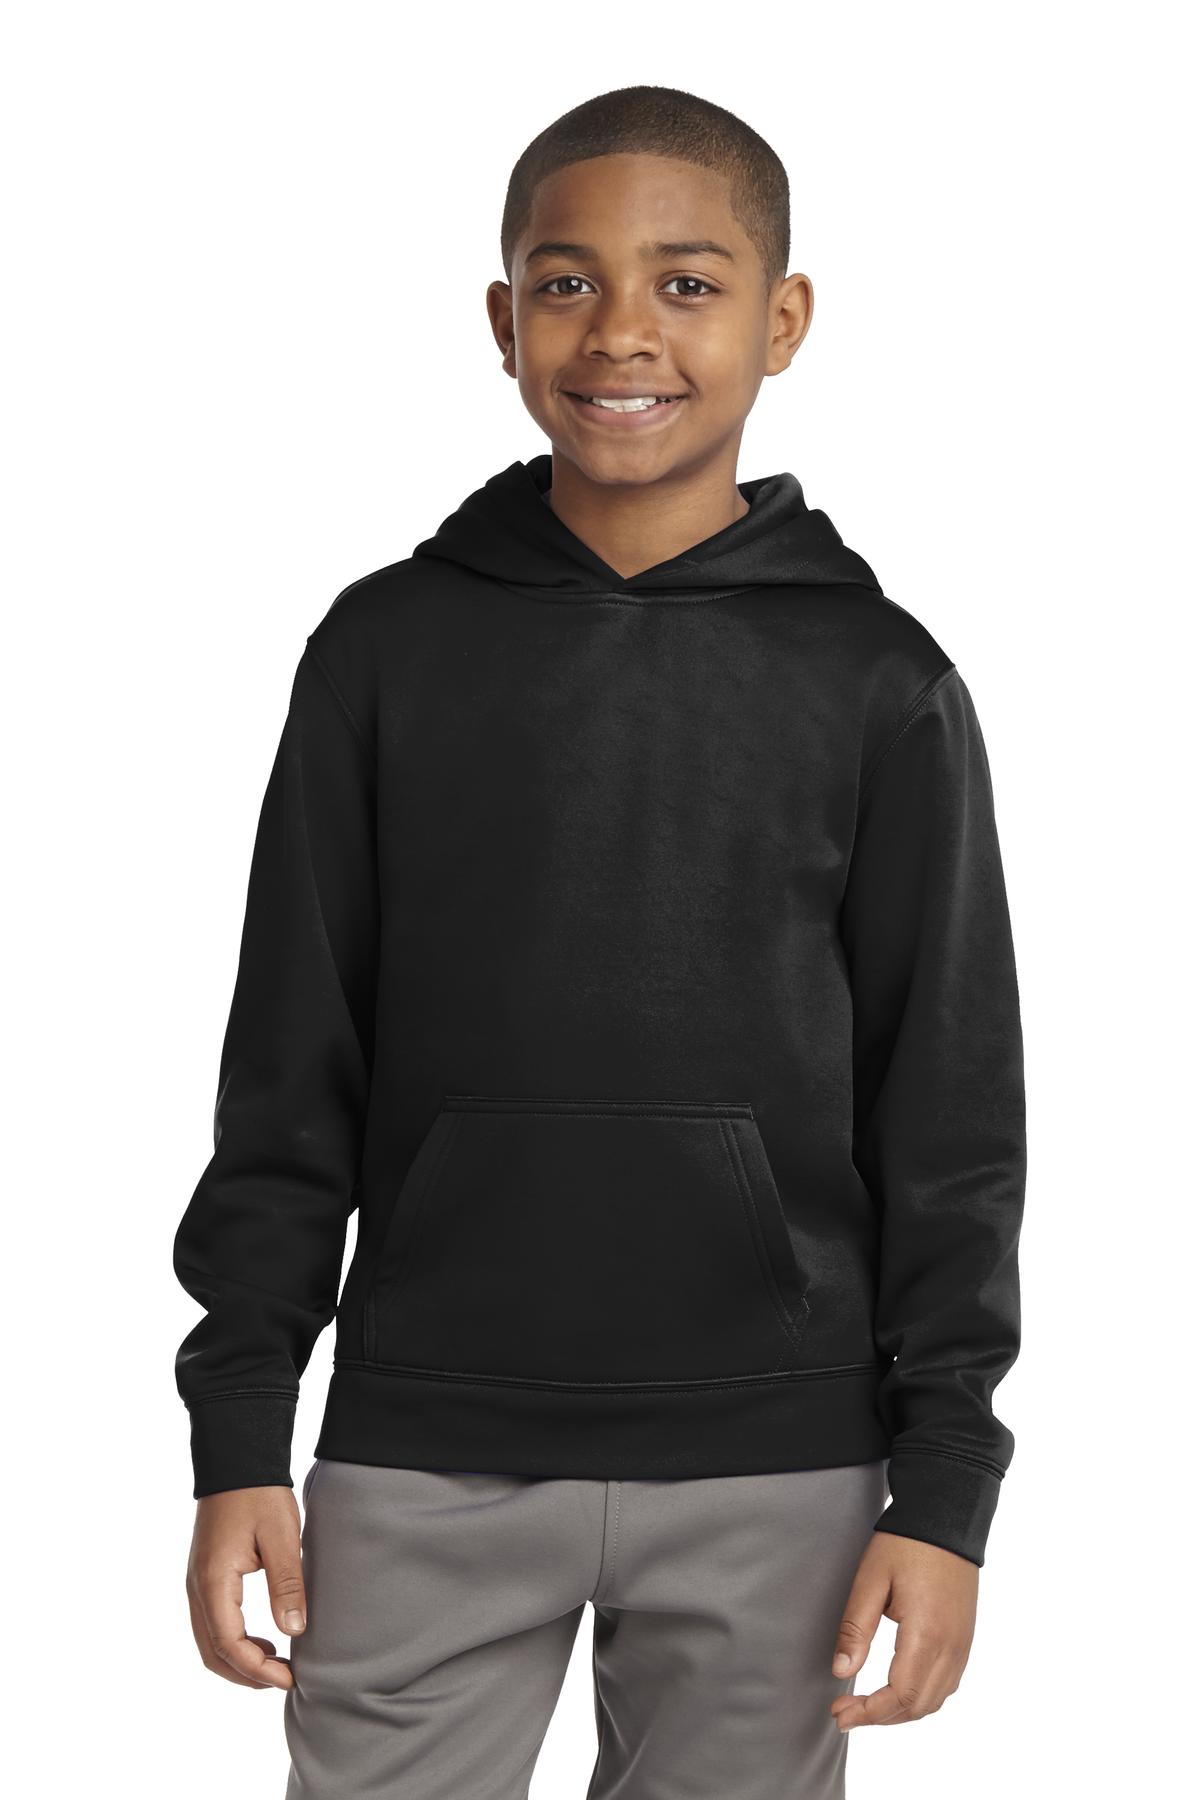 Sport-Tek Youth Sweatshirts & Fleece for Hospitality ® Youth Sport-Wick® Fleece Hooded Pullover.-Sport-Tek